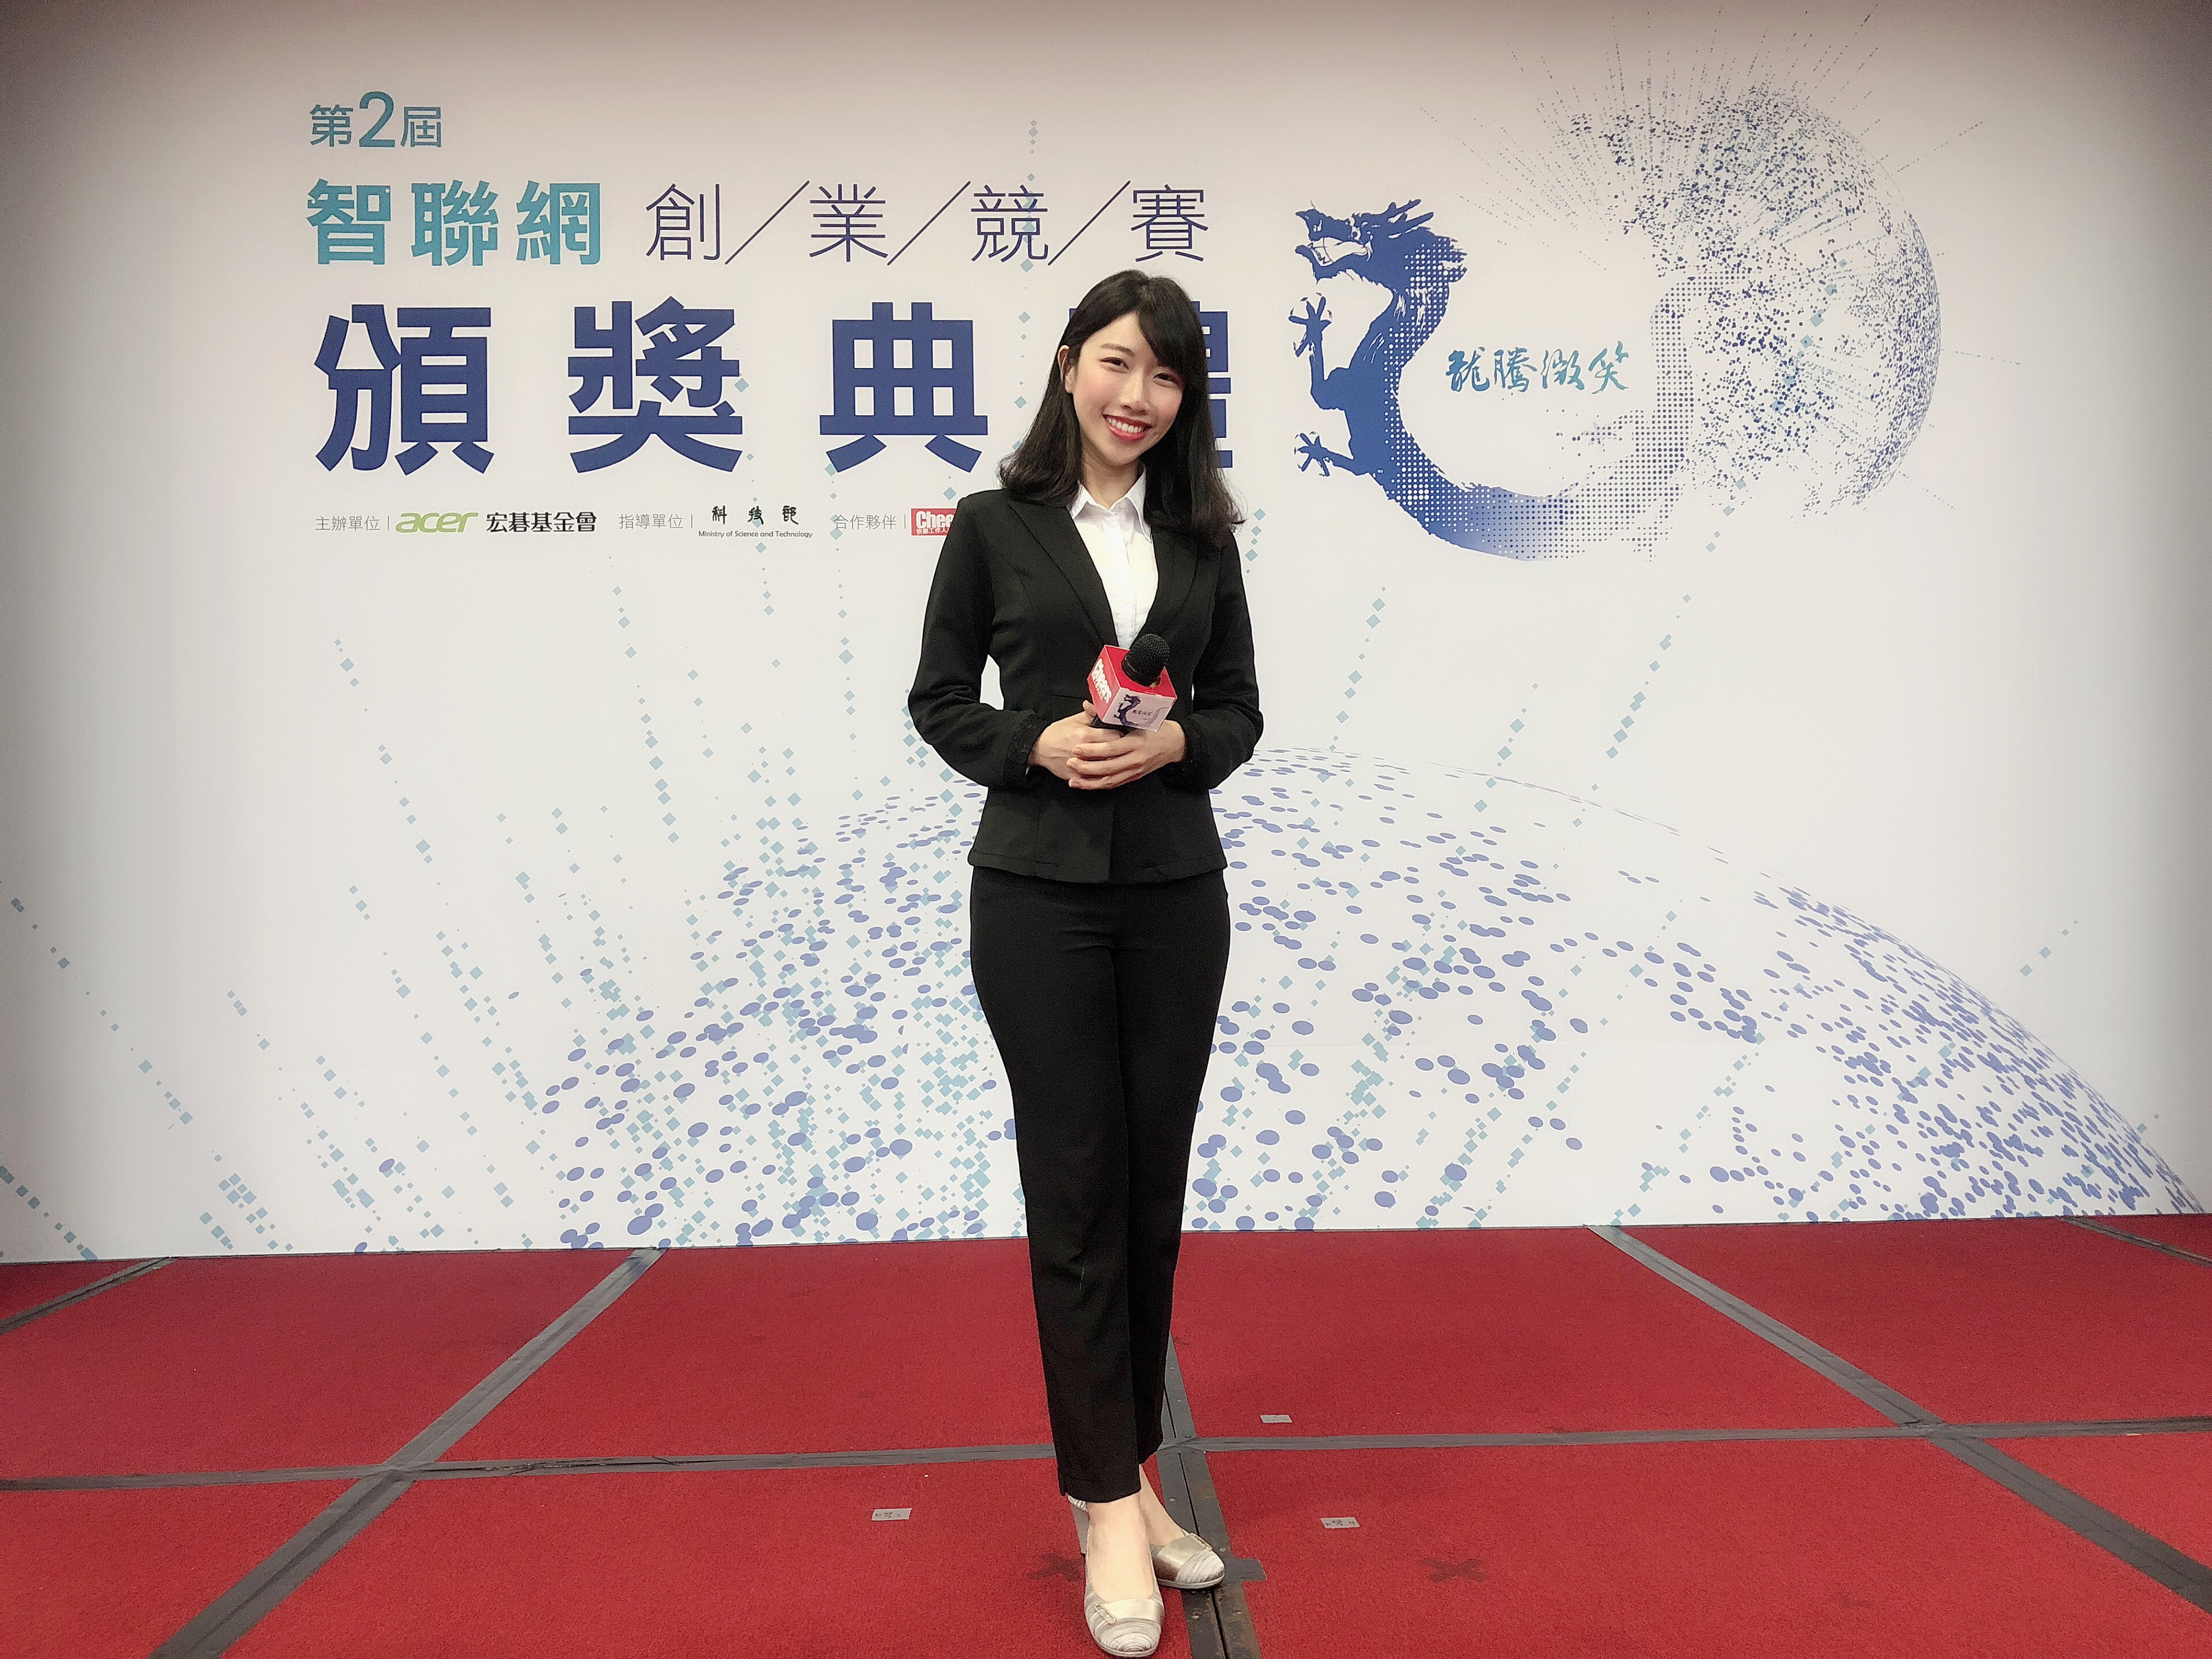 主持人王純蕙Tiffany工作紀錄: 第二屆龍騰微笑智聯網創業競賽頒獎典禮  活動主持人